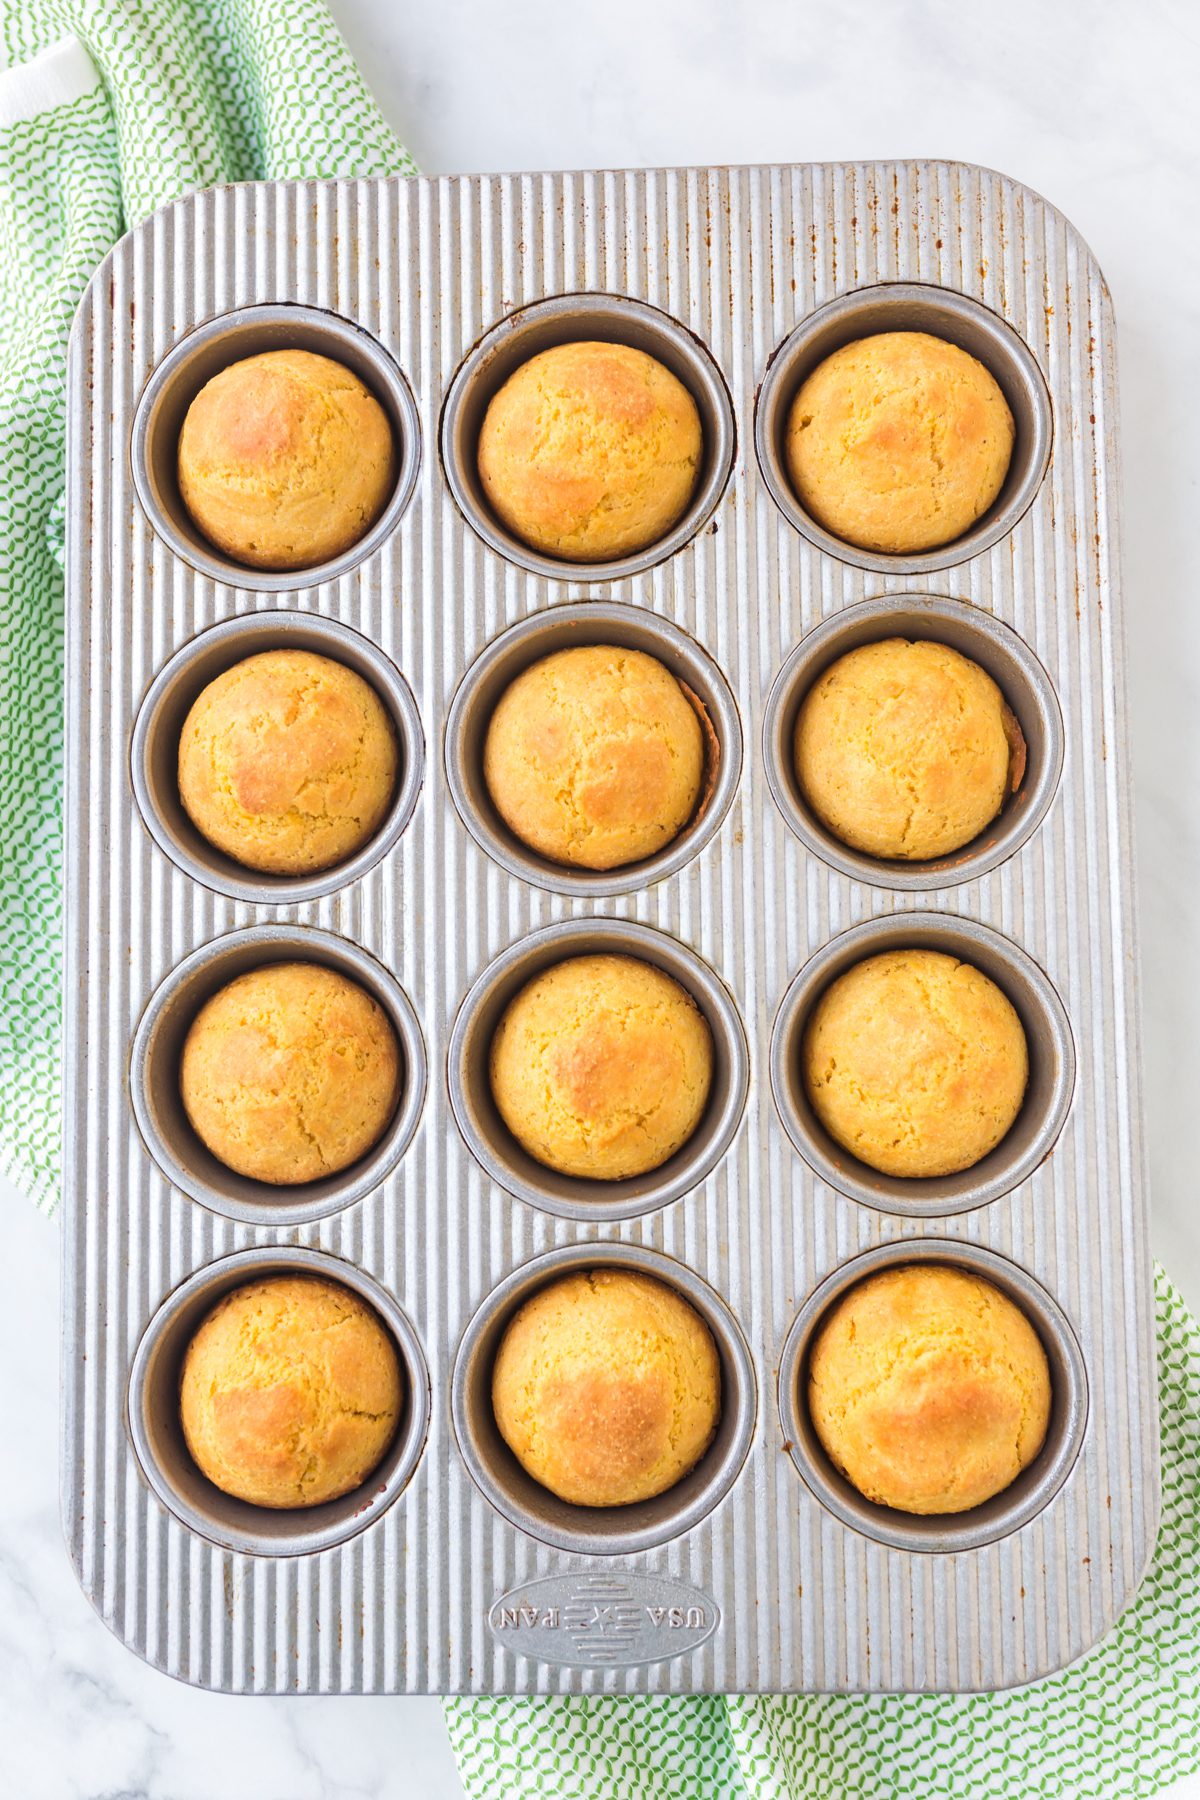 Easy Recipe for cornbread in a muffin pan